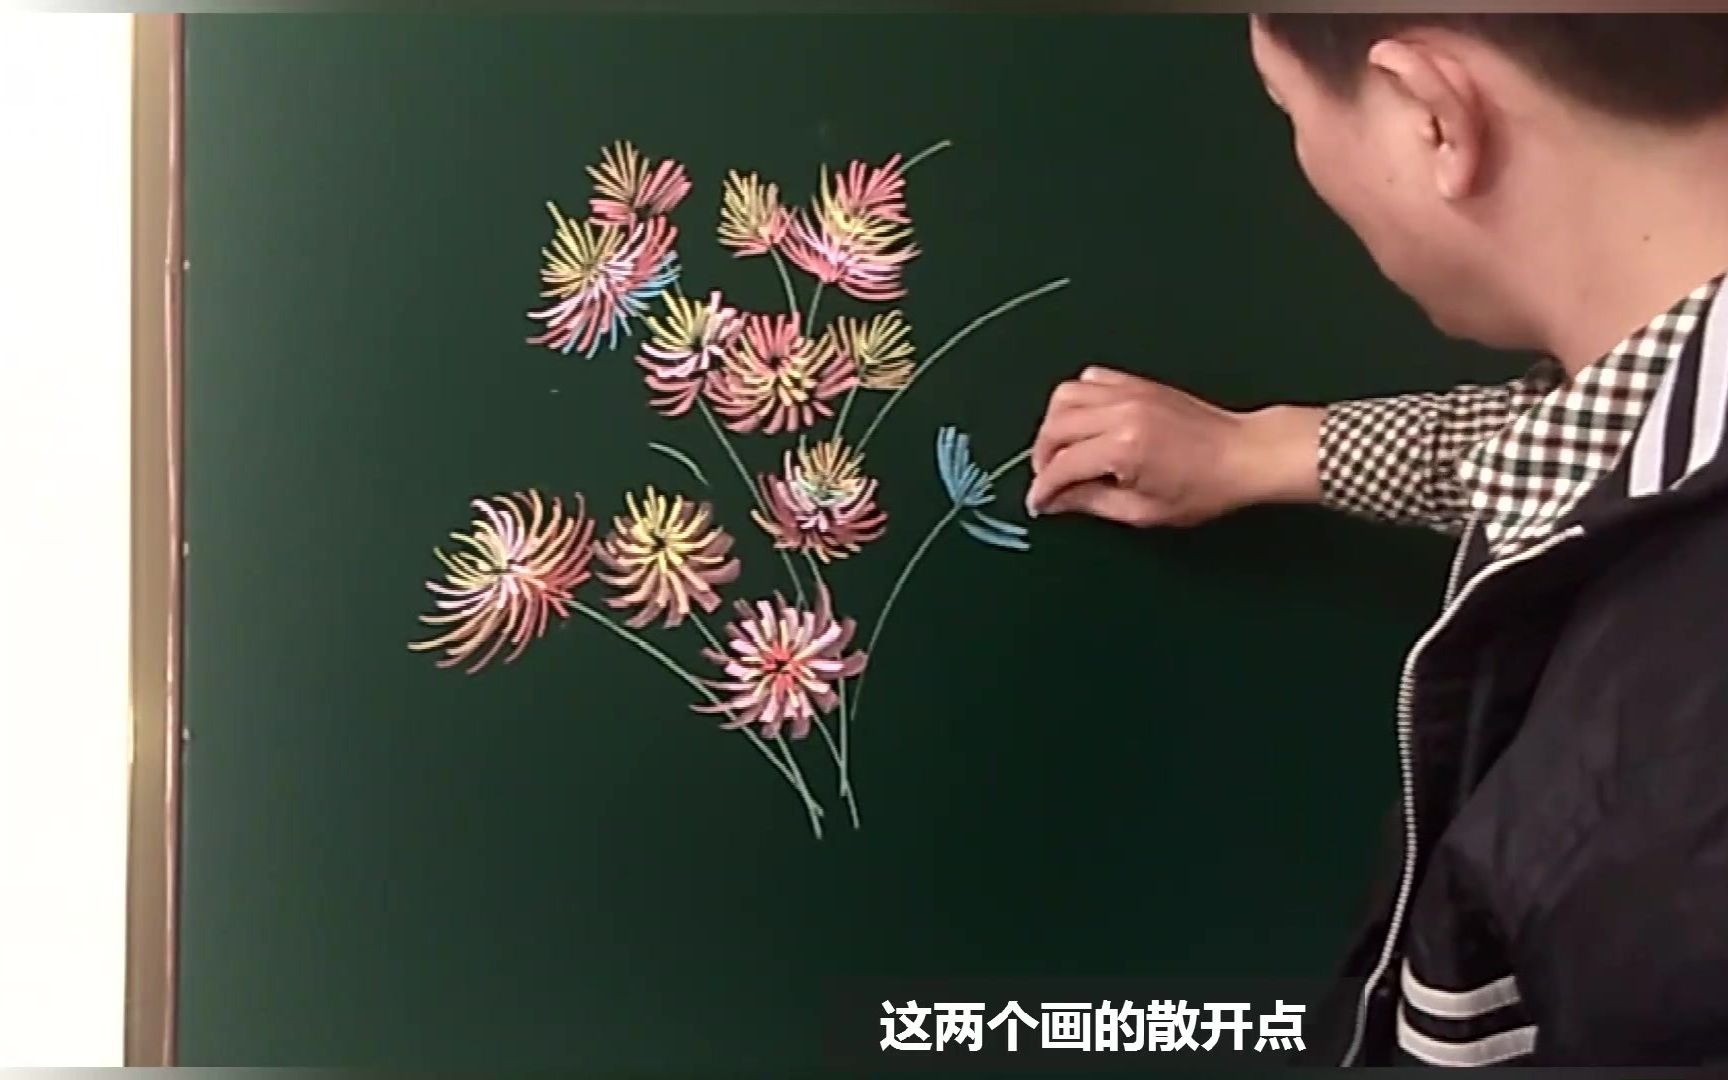 【黑板报插图】一束野菊花画法,太美了,去装扮起来